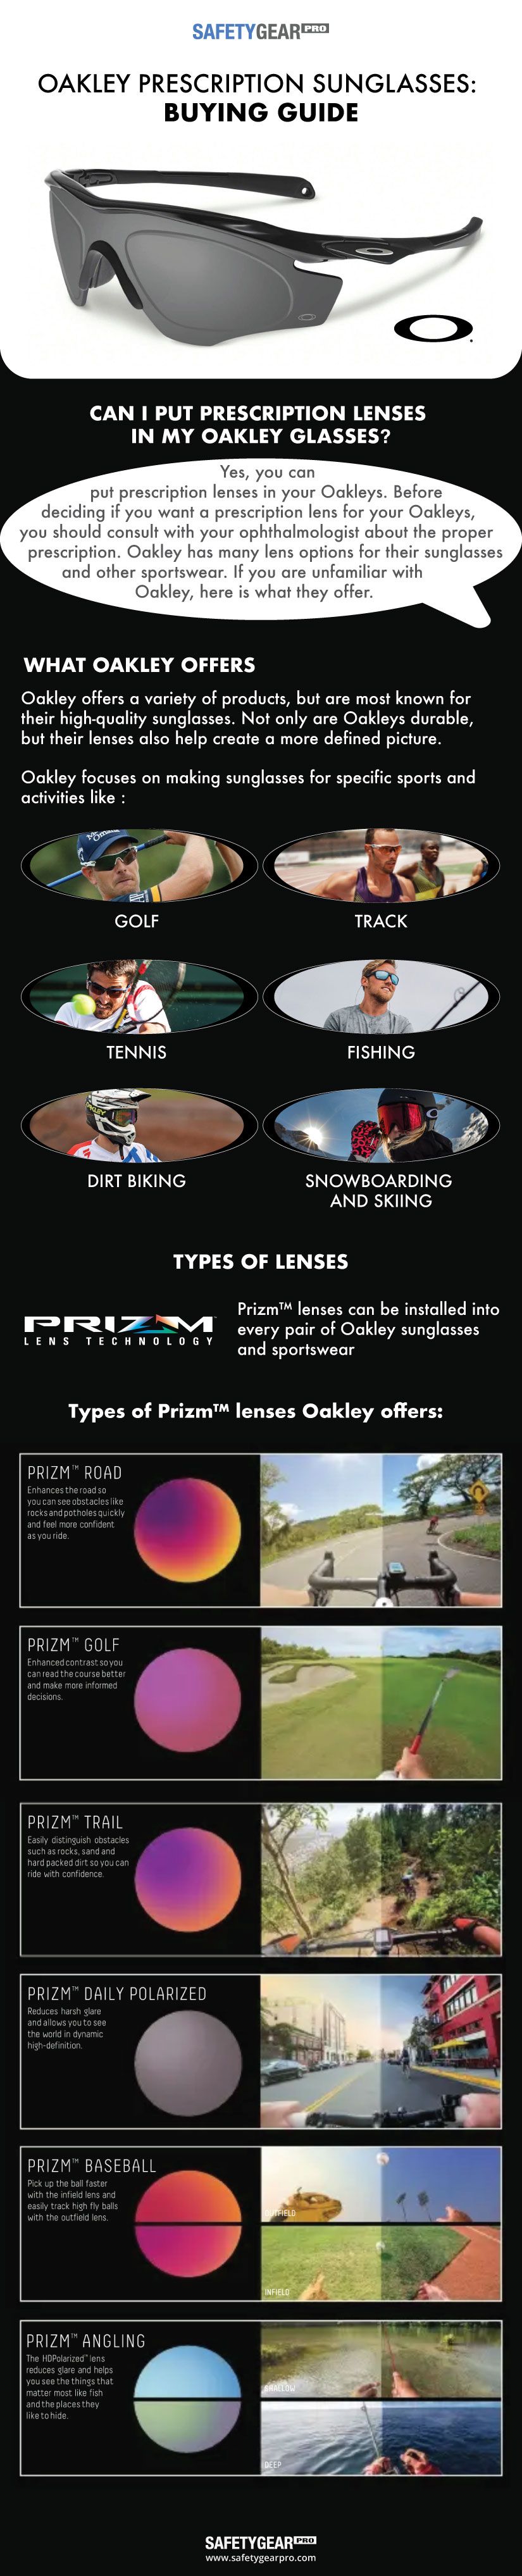 Oakley Prescription Sunglasses Guide | Safety Gear Pro